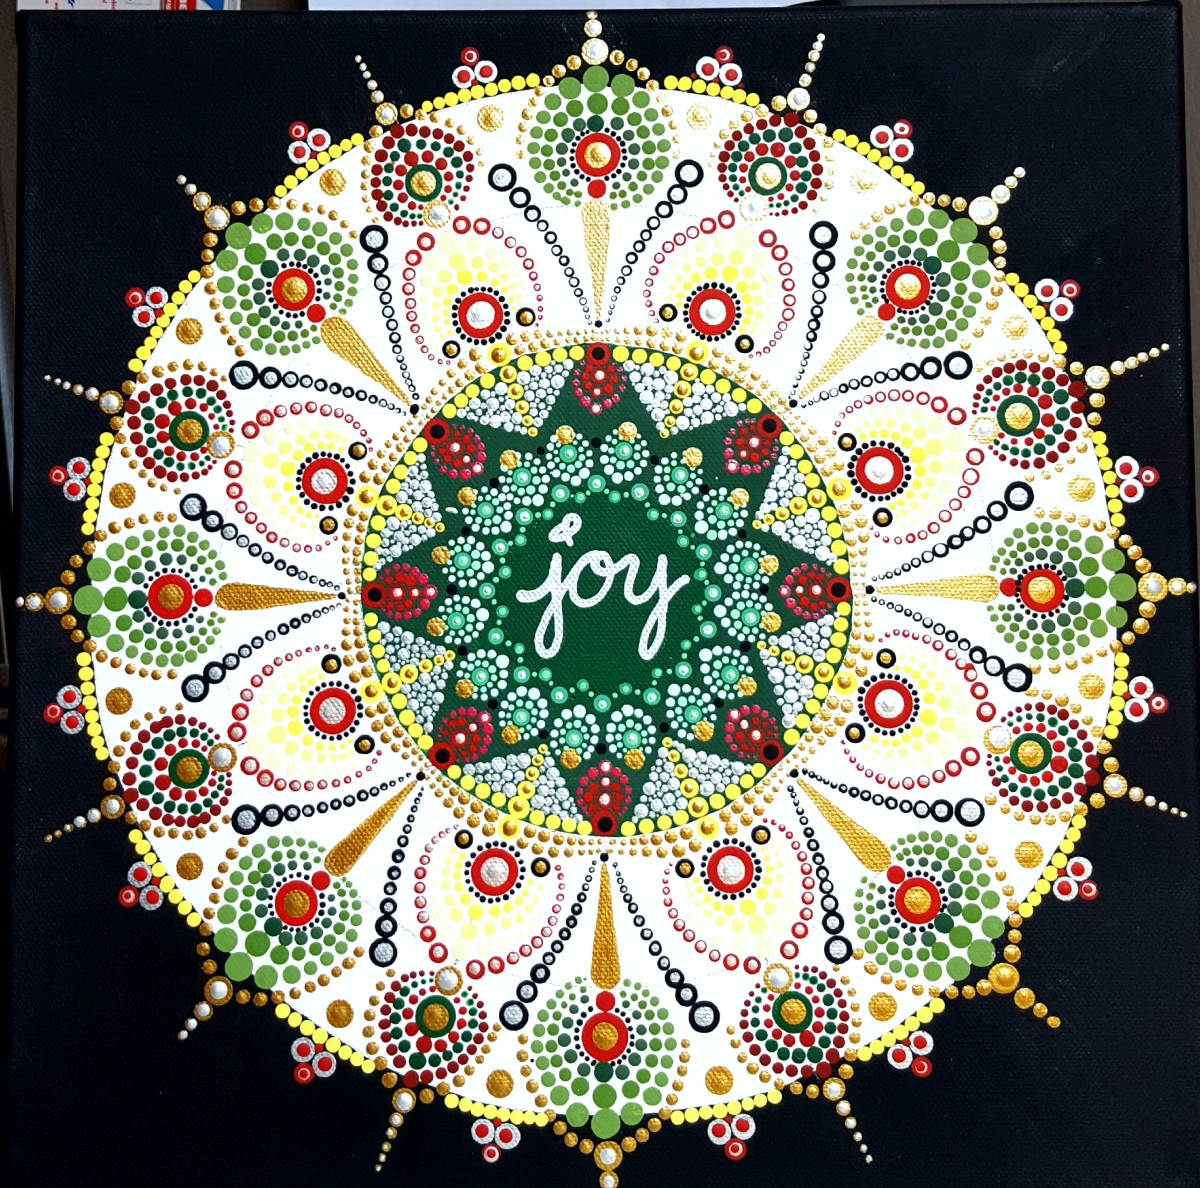 joy! by Terri Martinez 